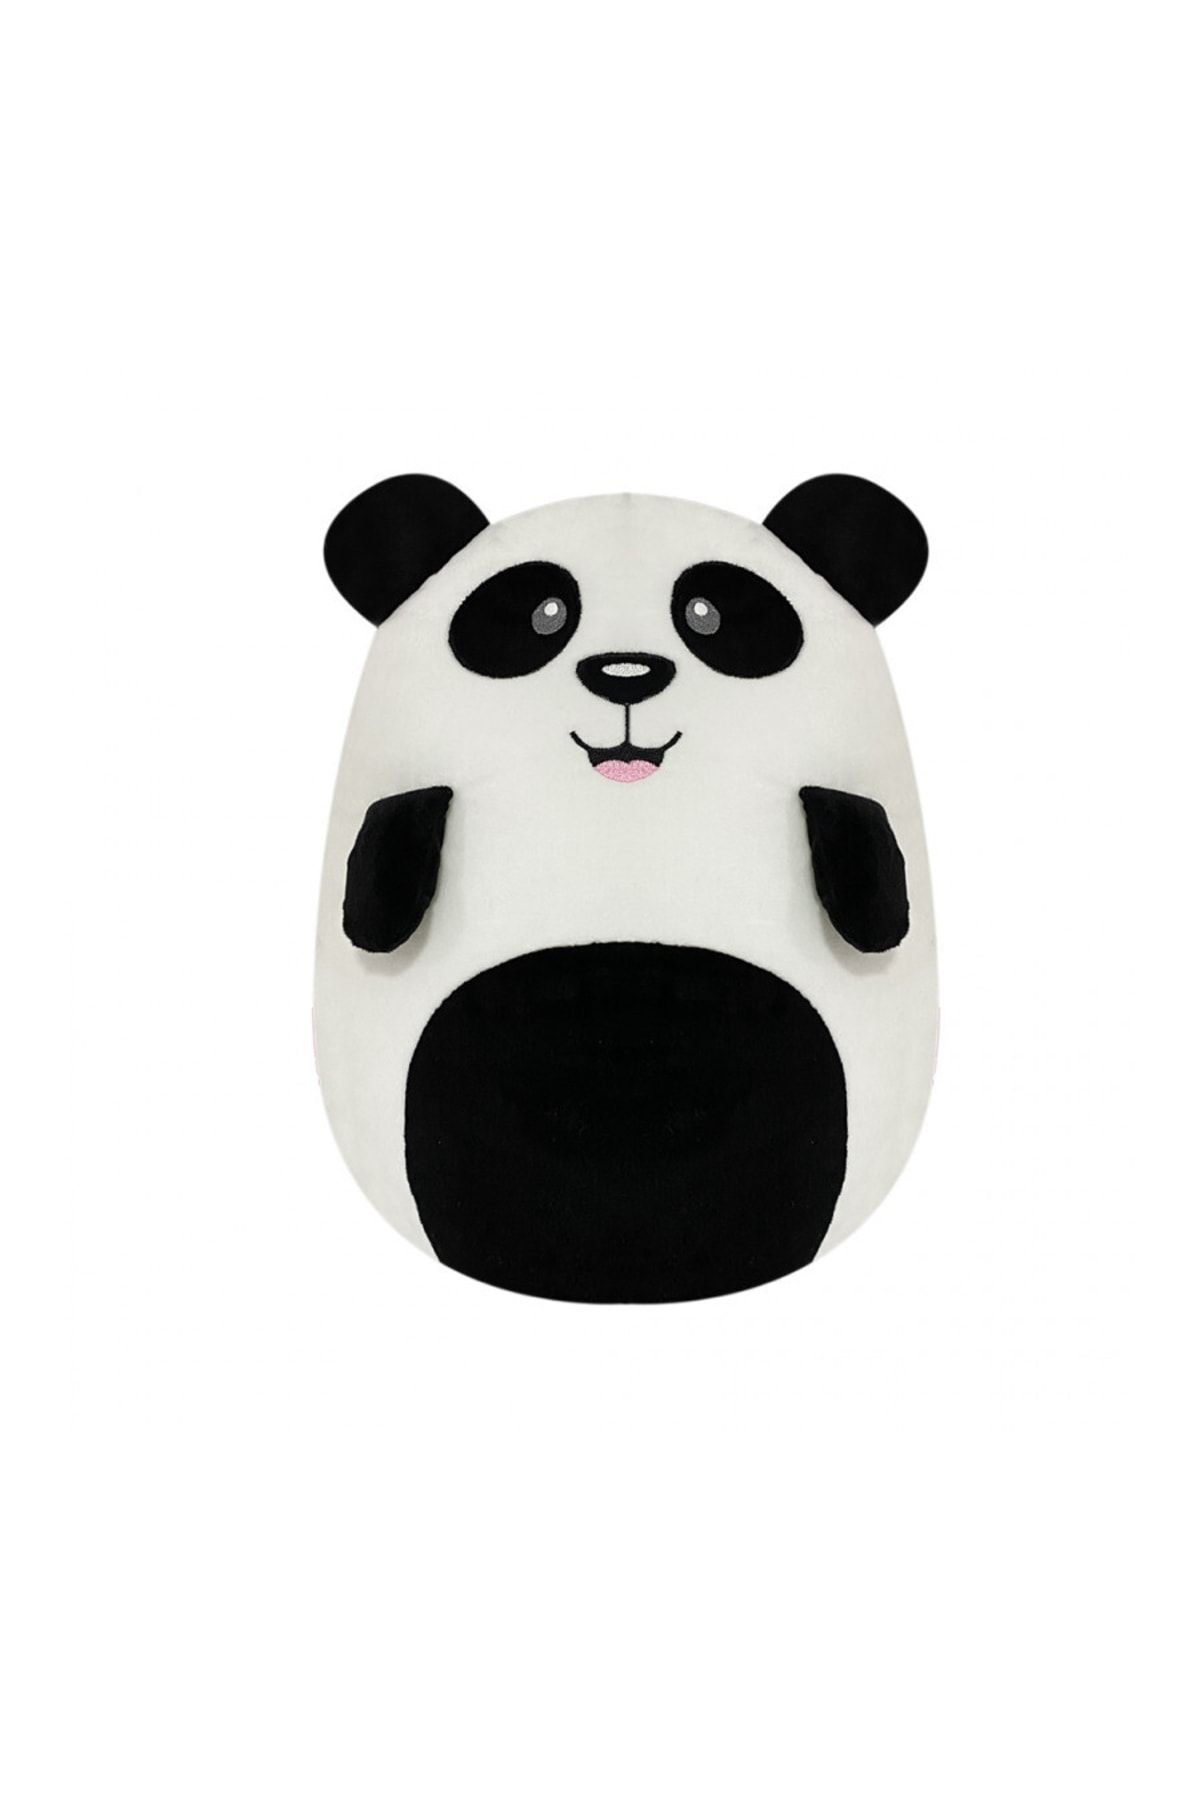 SELAY TOYS Peluş Panda Oyuncak Yastık 33 Cm